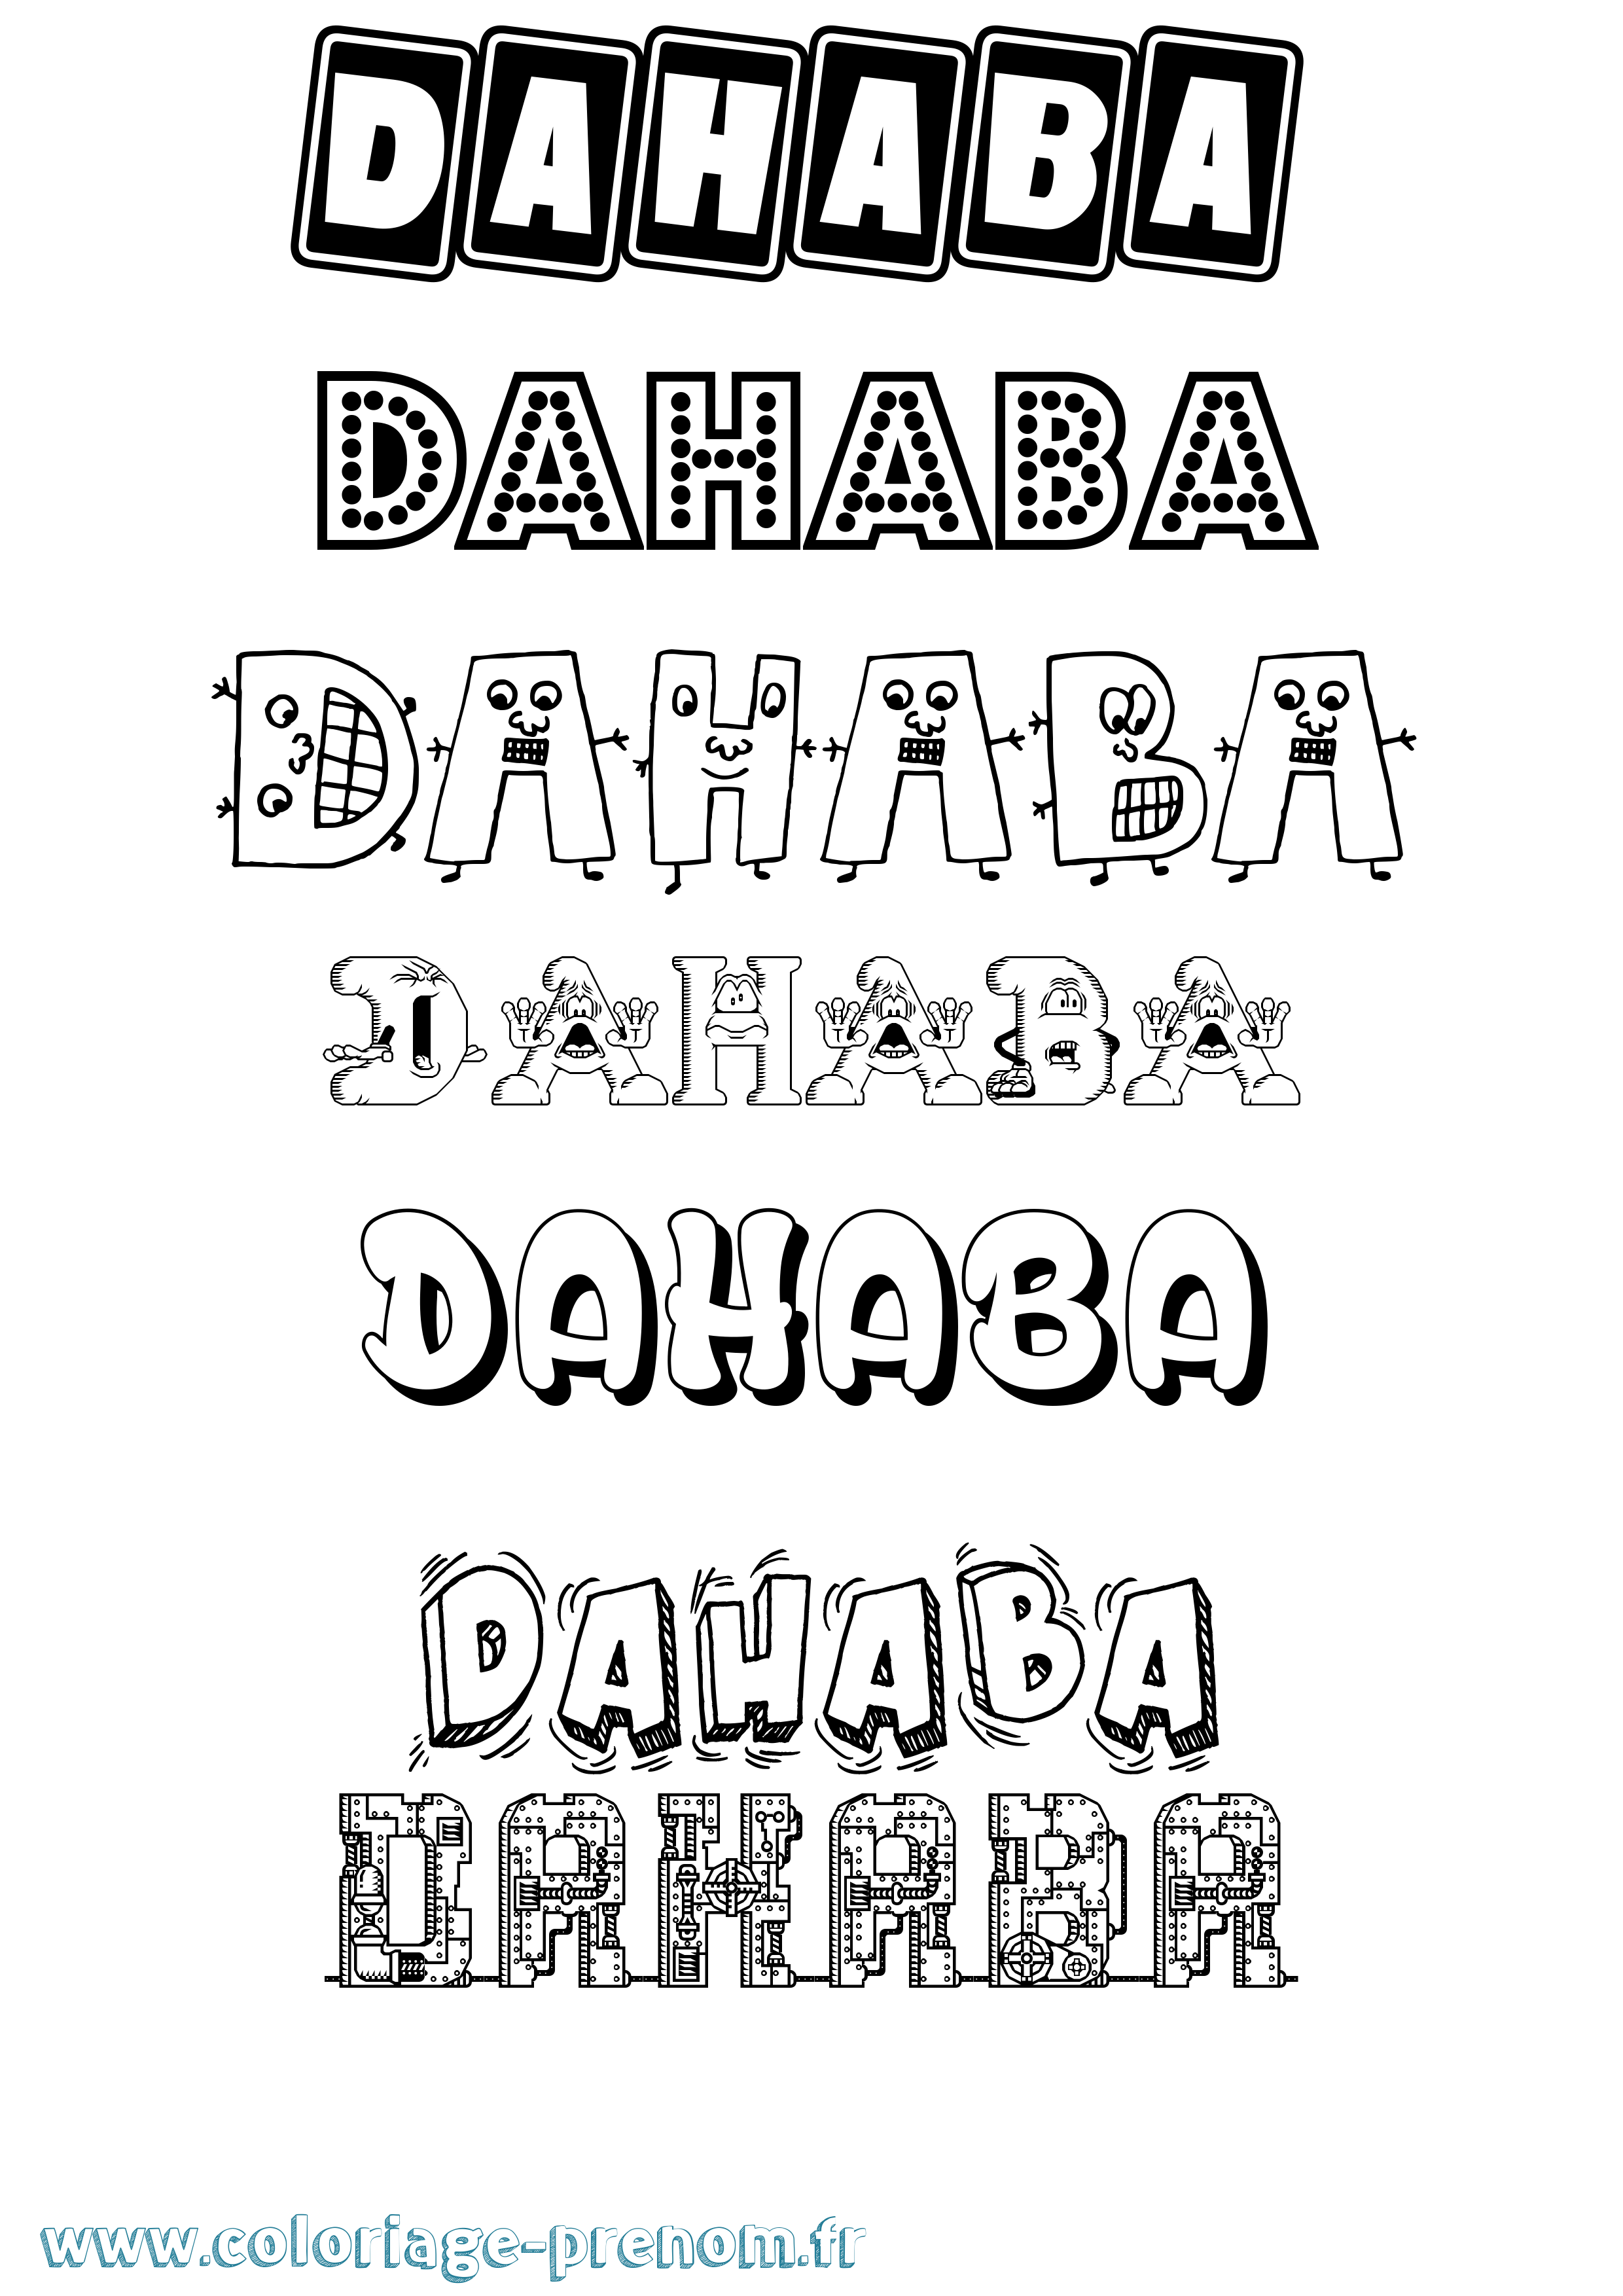 Coloriage prénom Dahaba Fun